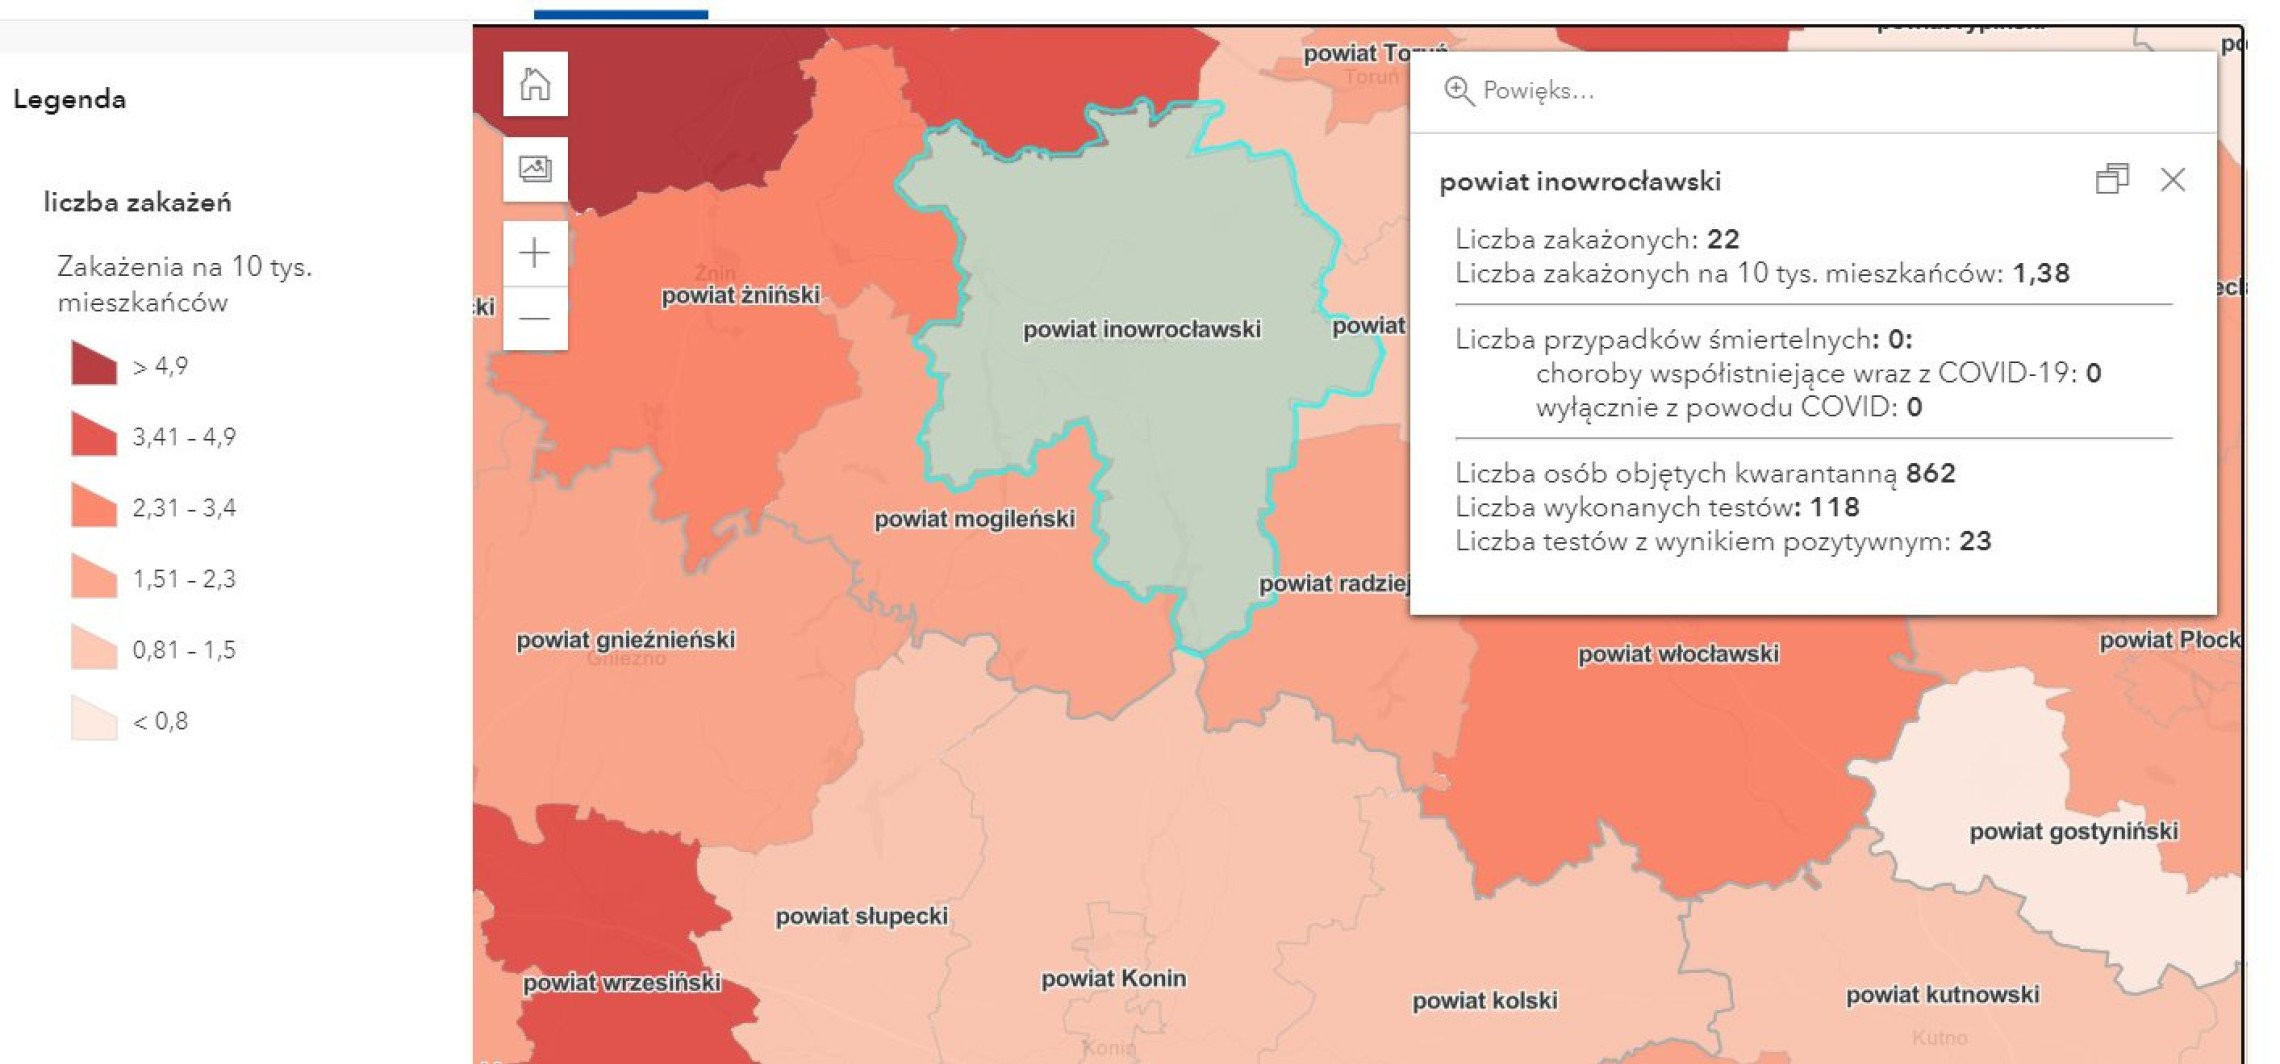 Inowrocław - Nowe dane o zakażeniach koronawirusem